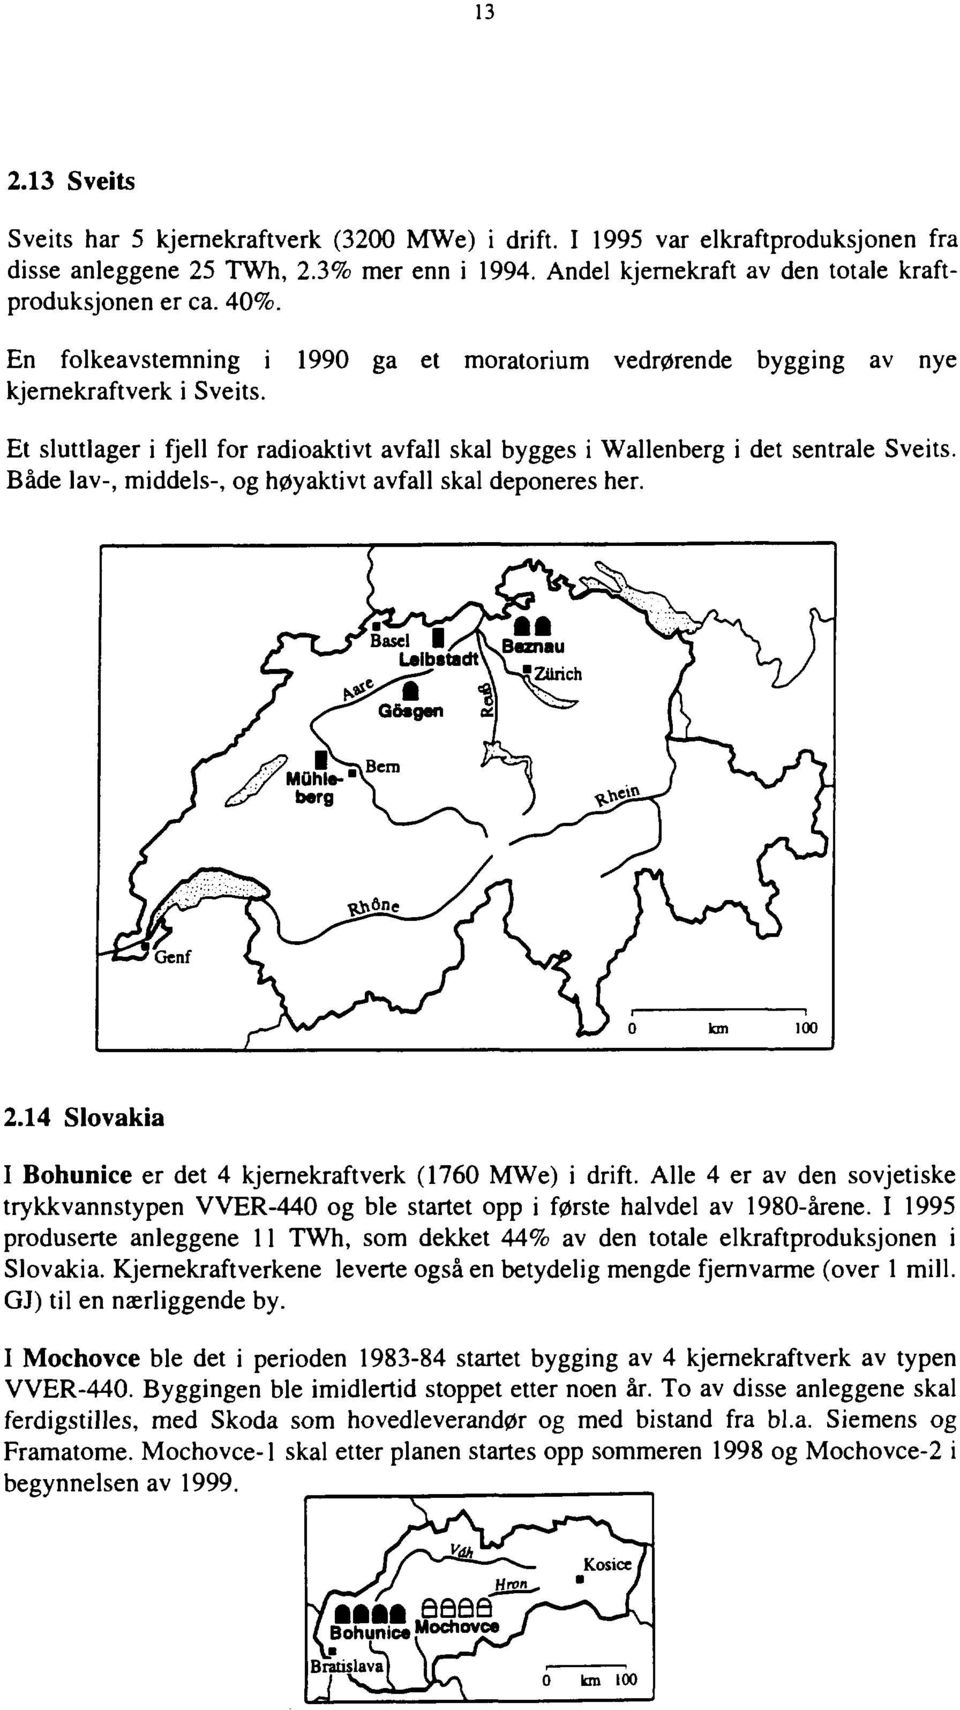 Både lav, middels, og høyaktivt avfall skal deponeres her. f s taznau "*""^ LeibstadtVS '^Zurich / /~^ G&sgen <S VU> o km 100 2.14 Slovakia I Bohunice er det 4 kjernekraftverk (1760 MWe) i drift.